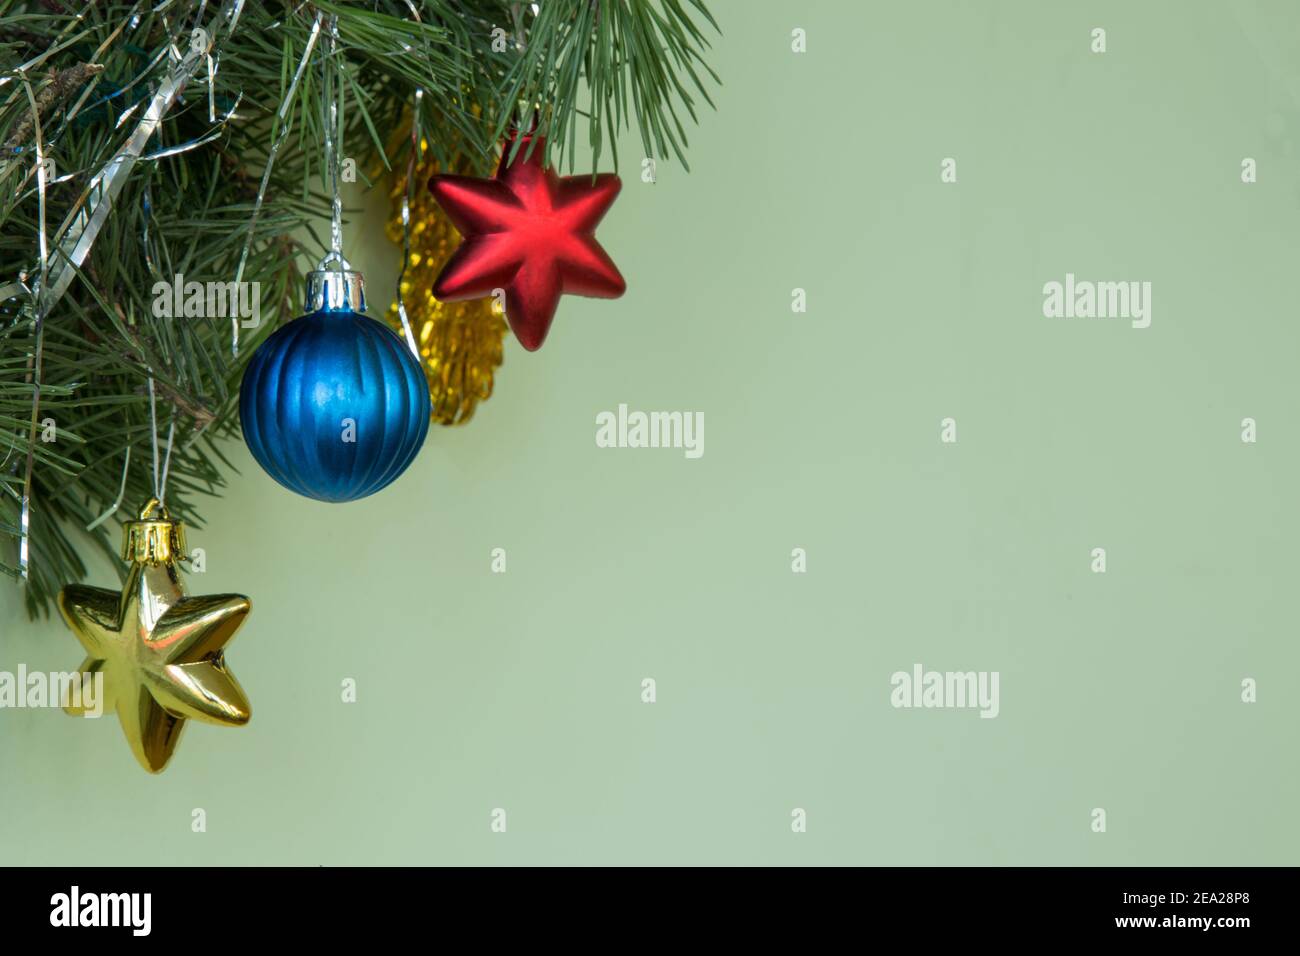 Weihnachtsdekoration. Natürliche Kiefernzweige auf grünem Hintergrund mit blauer Kugel und gelben roten Sternen und Neujahrsspielzeug. Speicherplatz kopieren. Stockfoto